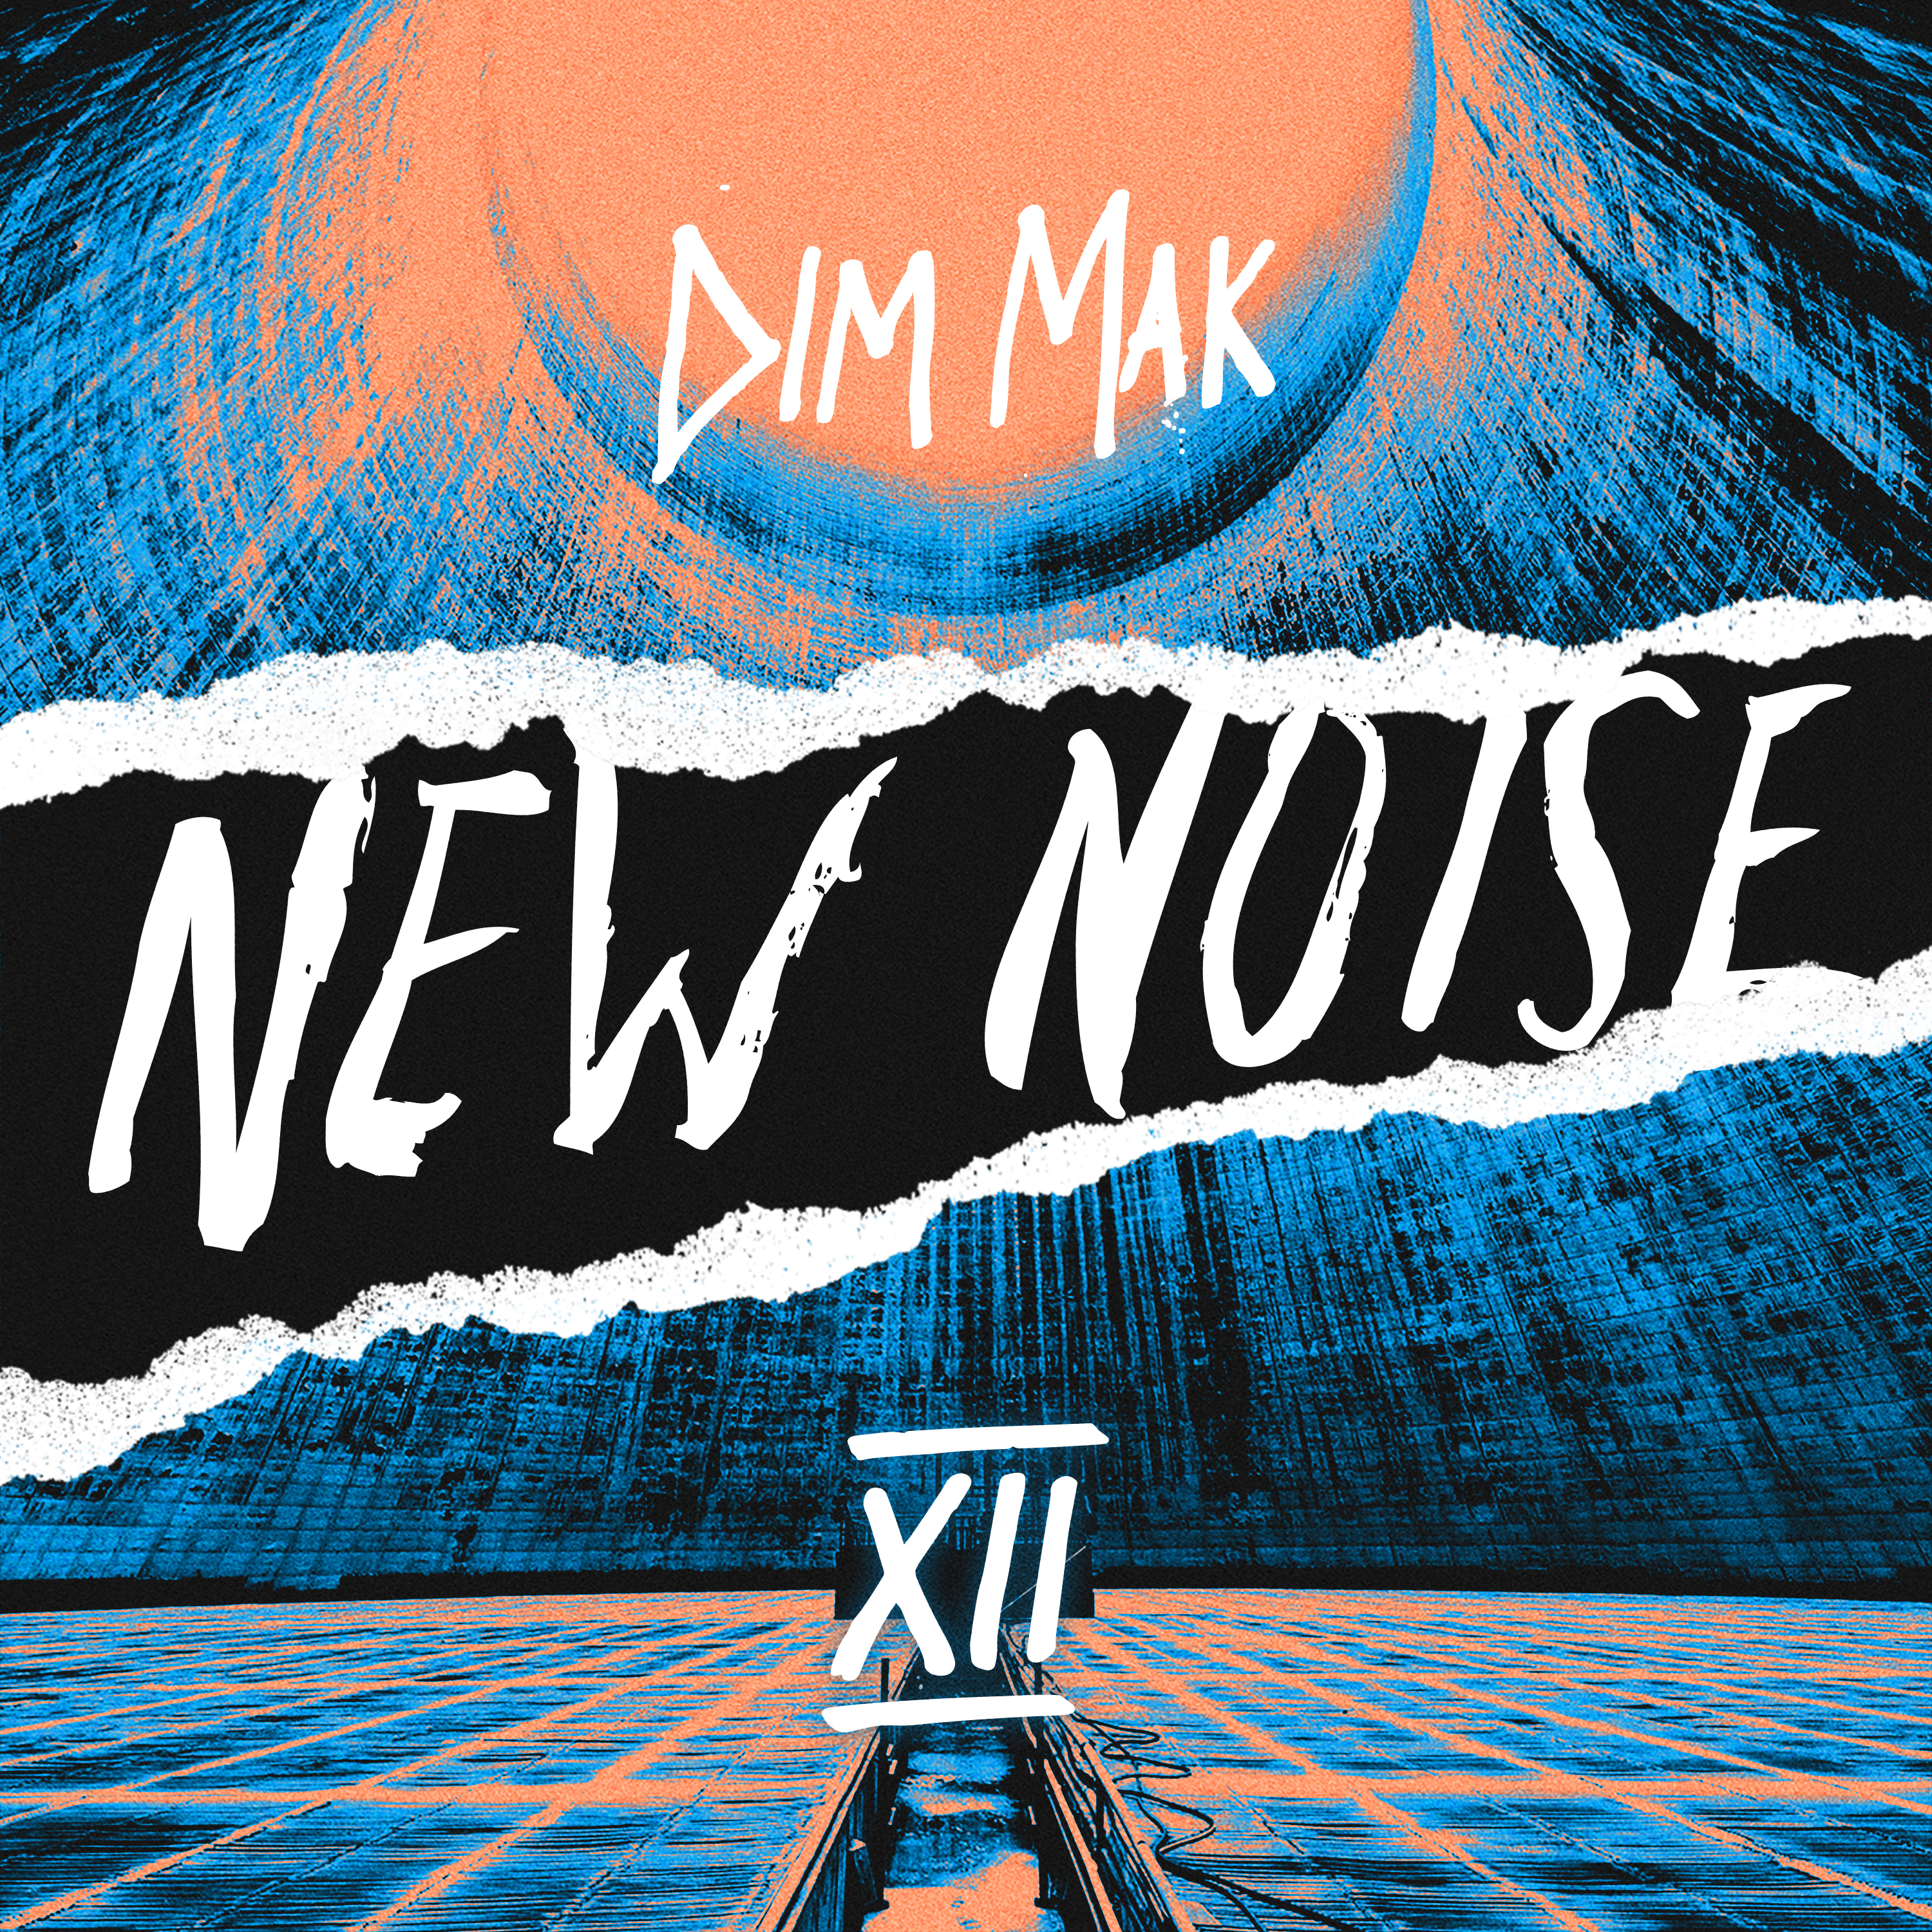 Dim Mak Presents New Noise, Vol. 12